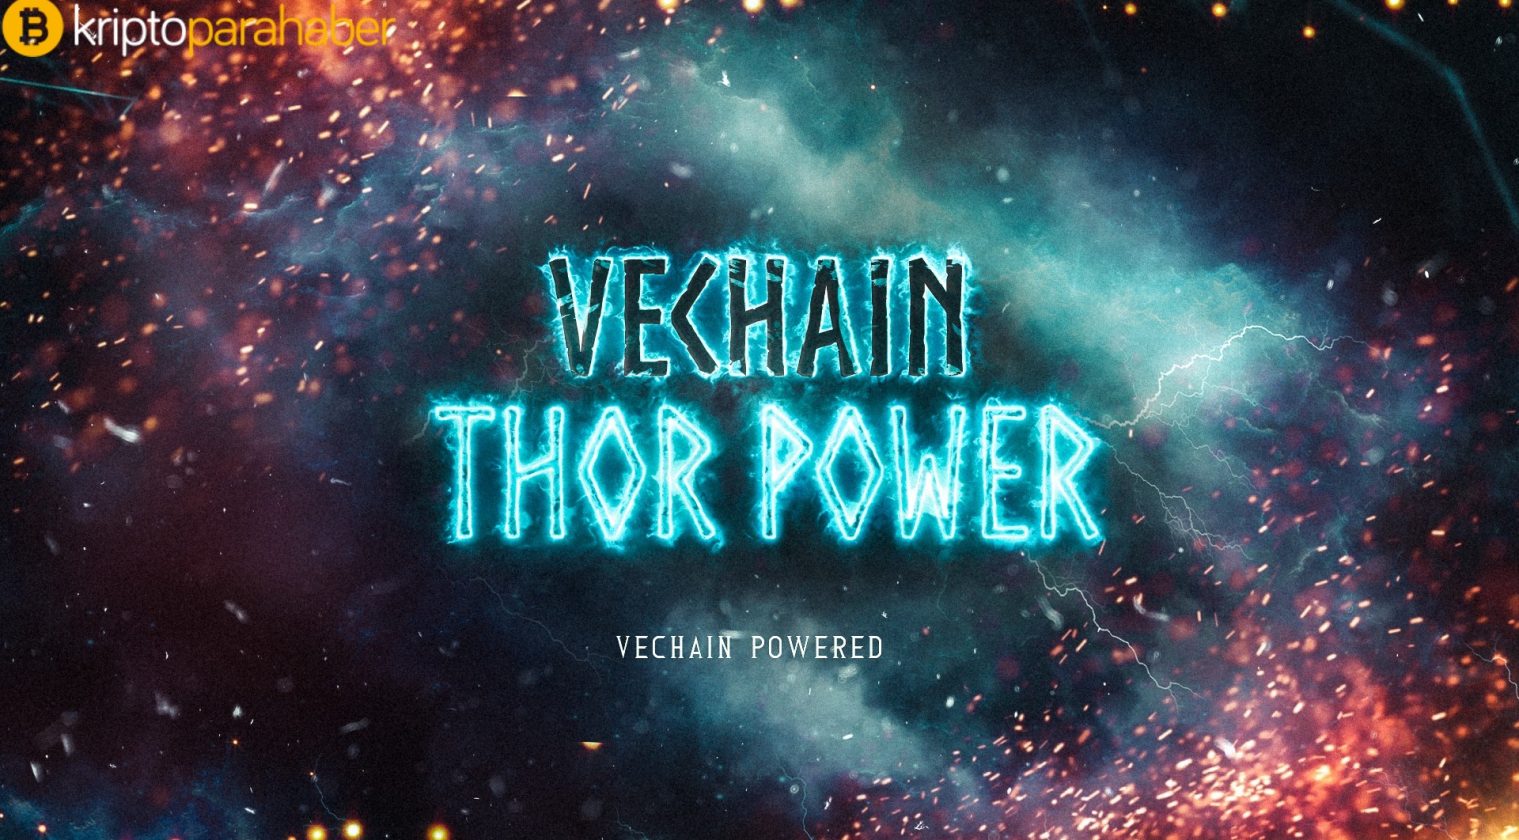 VeChain Thor şirketlere Blockchain hizmeti sunacak